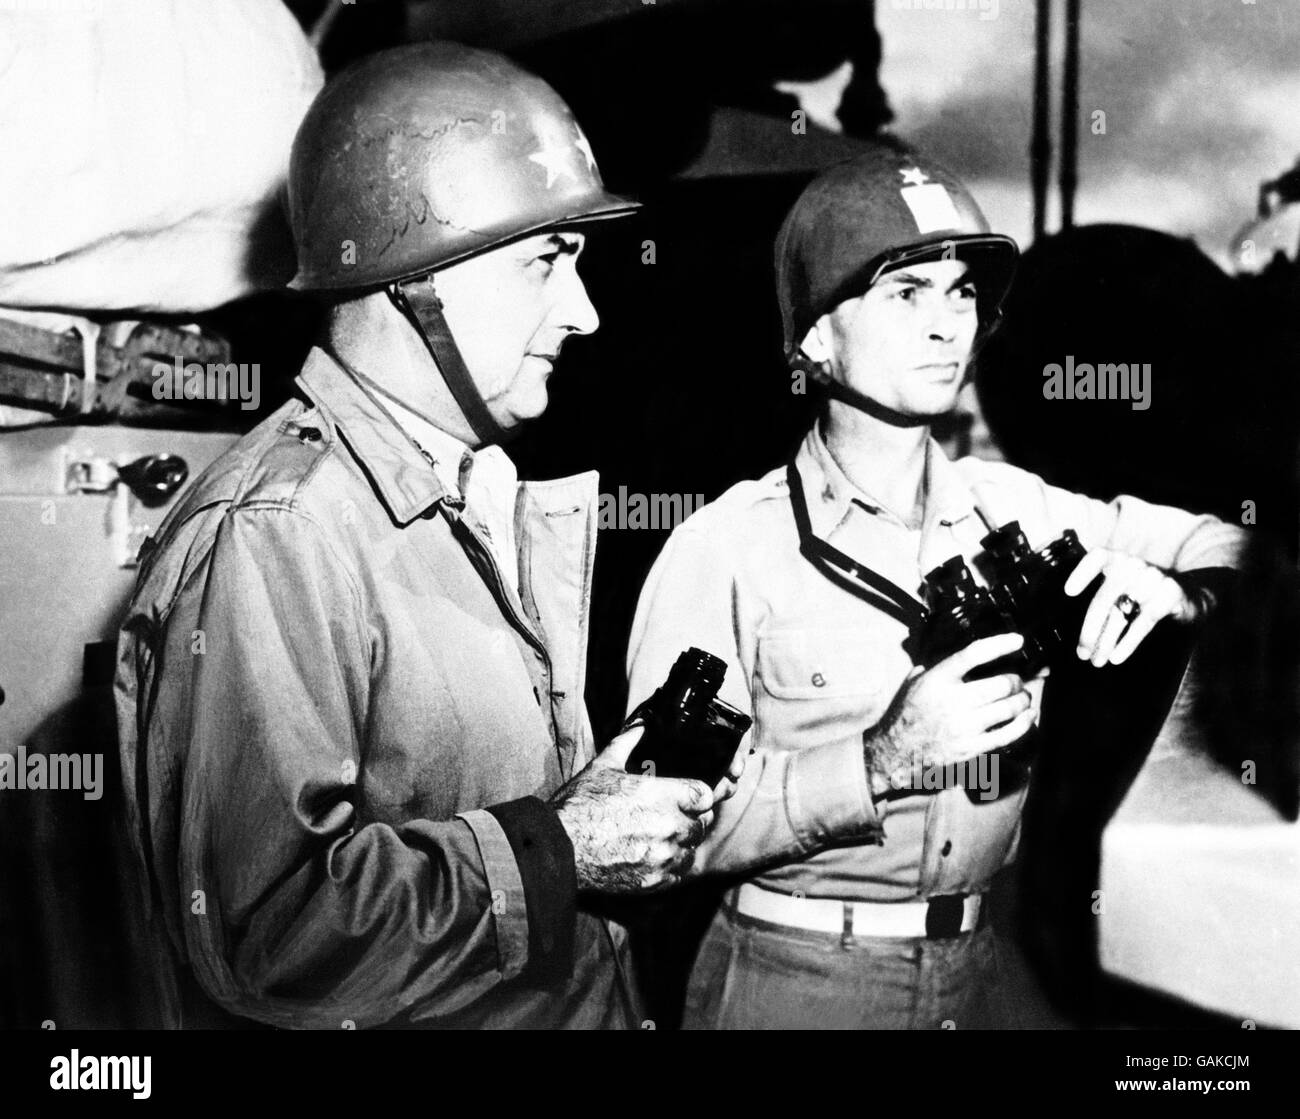 Task Force auf dem alarmiert Vizeadmiral Arthur D. Struble (links), und sein Stabschef, Captain George T. Mundroft, auf der Brücke des schweren Kreuzers Flaggschiff einer gemeinsamen britisch-amerikanischen Task Force in fernen östlichen Gewässern während eines Luftangriffs Alarm. Stockfoto